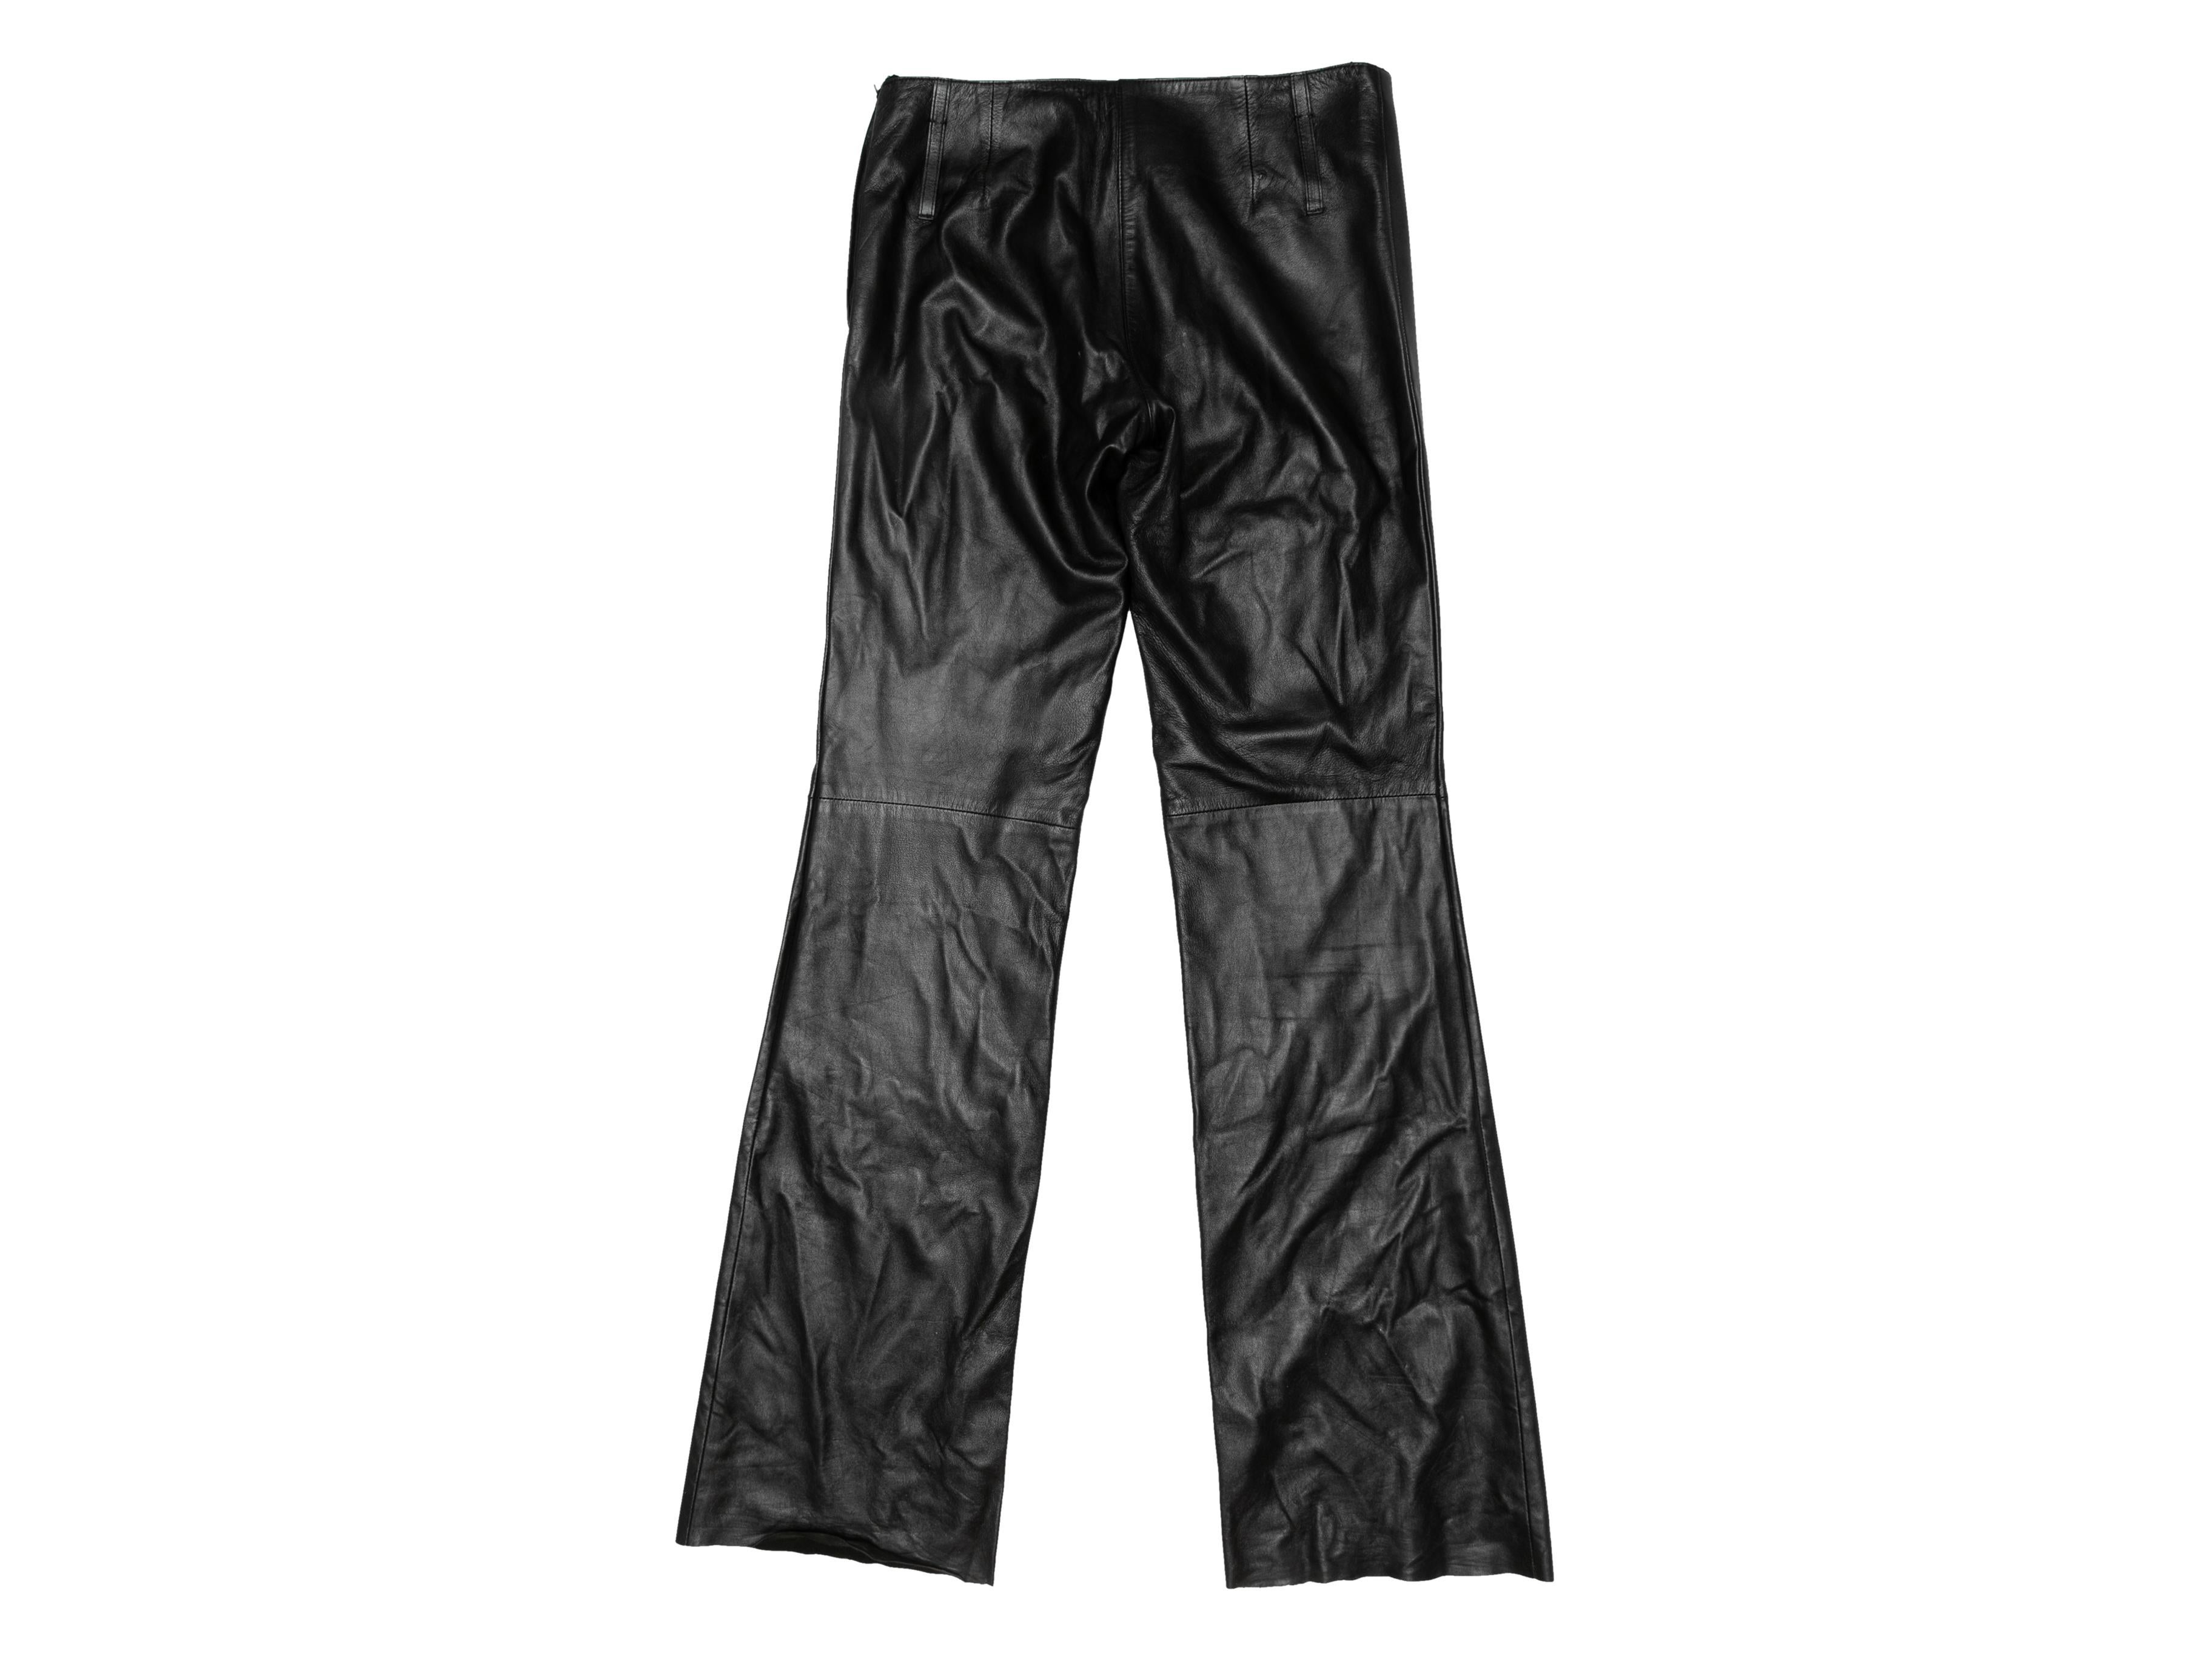 Schwarze Vintage-Lederhose von Prada. CIRCA Ende der 1990er/Anfang der 2000er Jahre. Seitlicher Reißverschluss. Designer Größe 44. 30